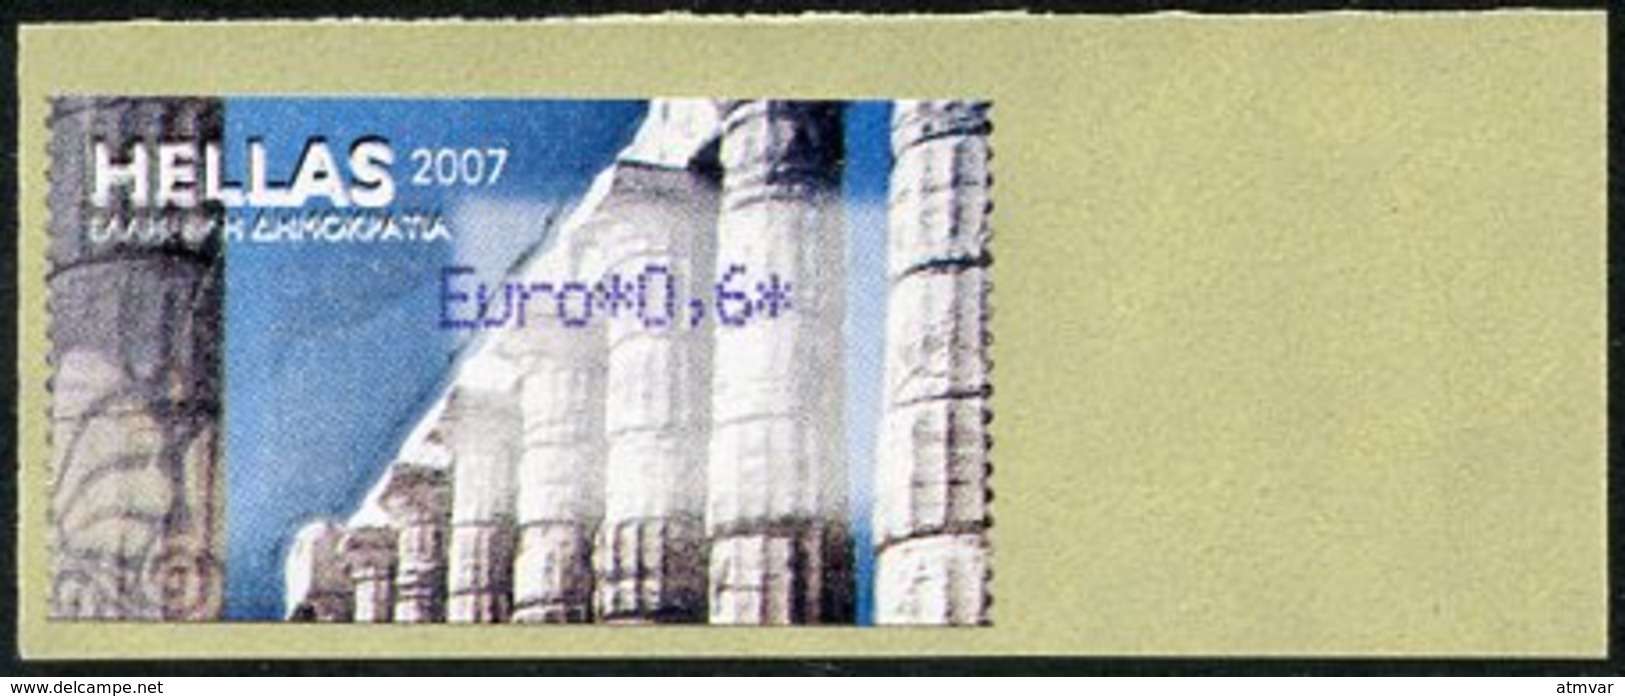 GREECE (2007) - ATM - Greek Temple Columns / Tempelsäulen / Columnas Templo Griego / Colonnes Temple - Euro 0,6 (2011) - Machine Labels [ATM]